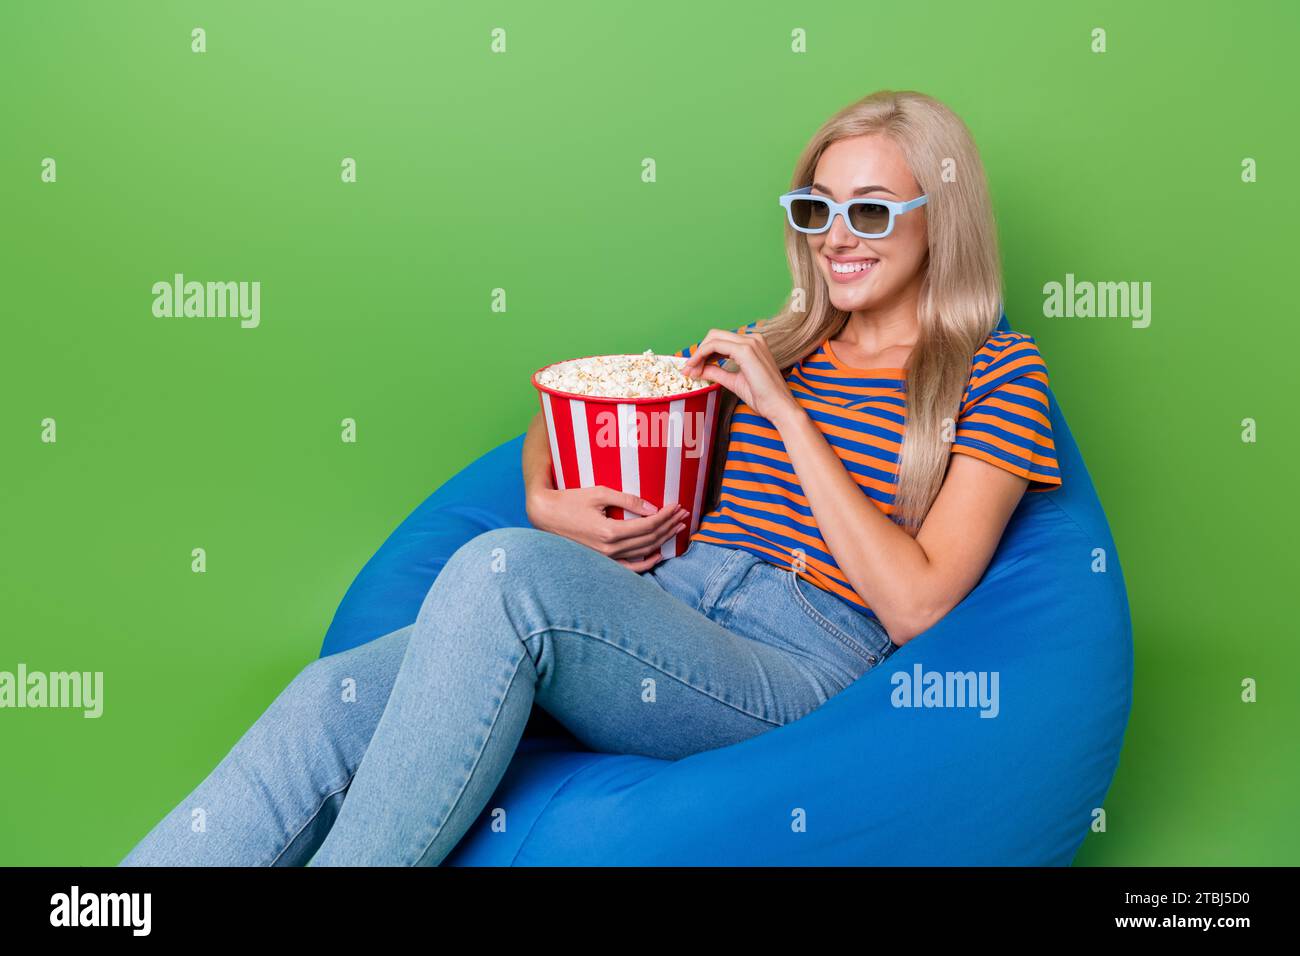 Photo de fille heureuse mangeant yummy préféré seau de pop-corn salé assis sac de haricots porter des lunettes 3d cinéma isolé sur fond de couleur verte Banque D'Images